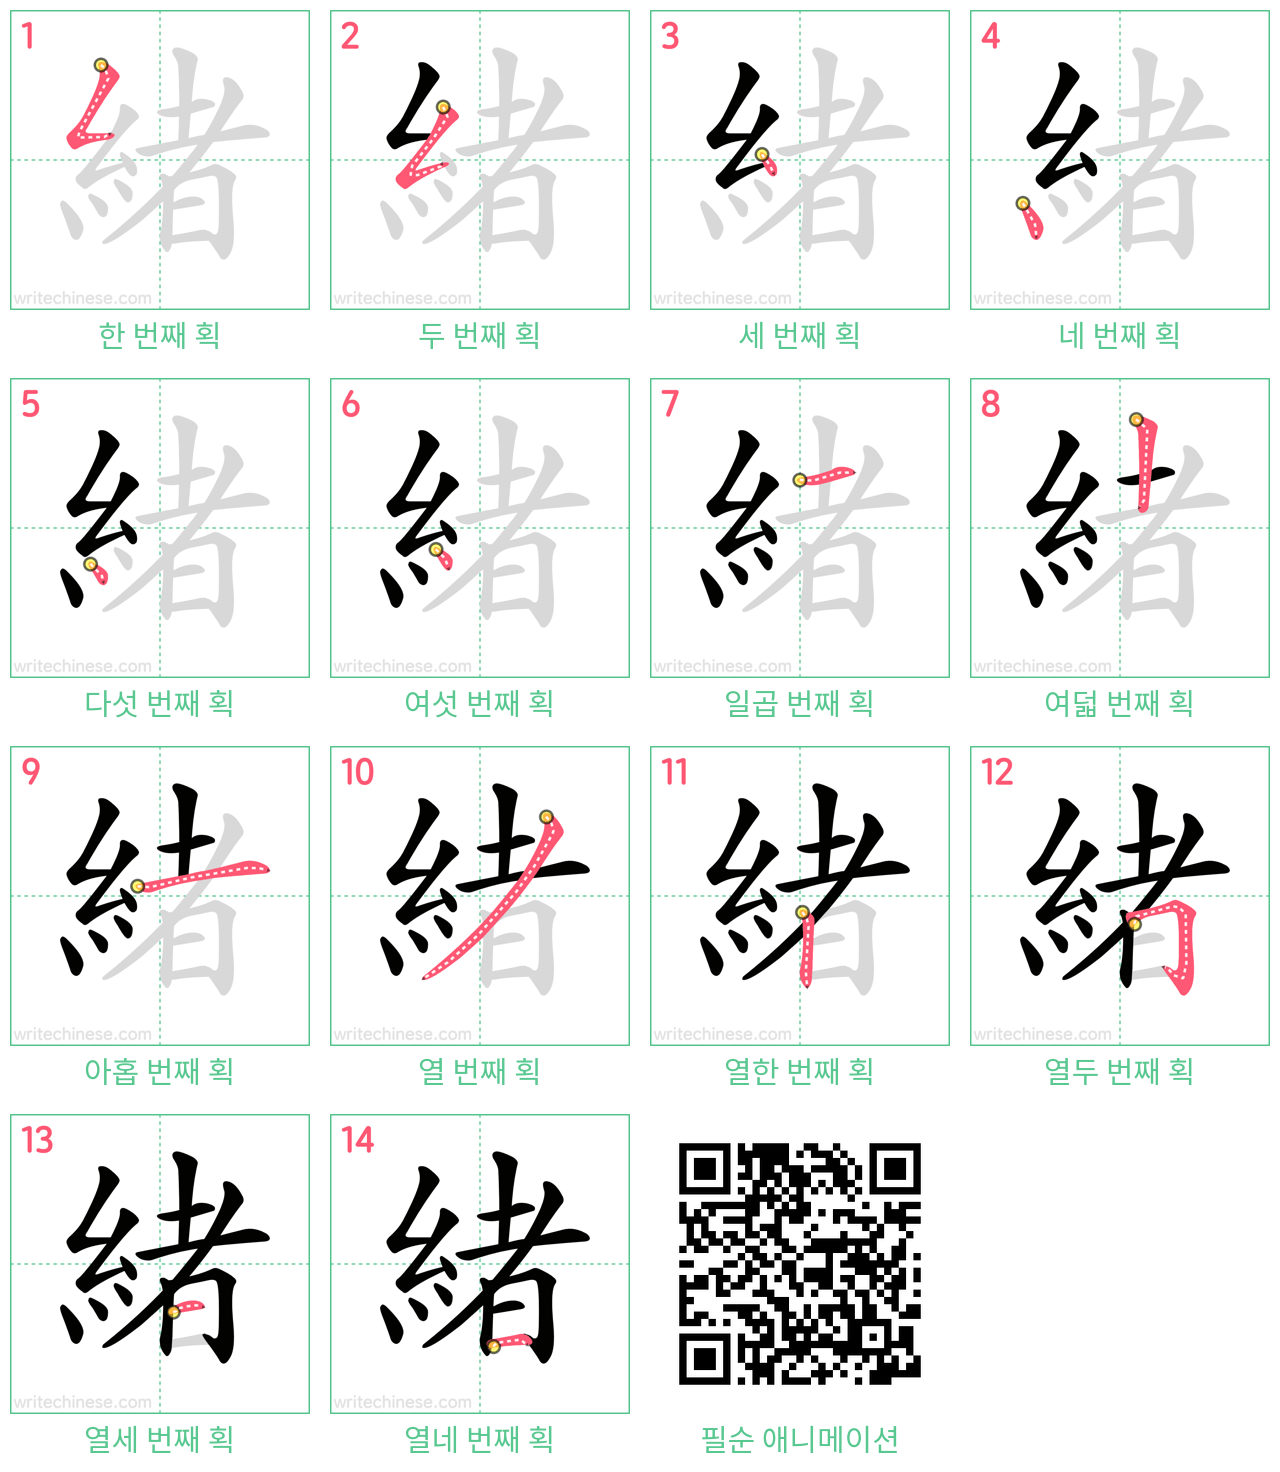 緒 step-by-step stroke order diagrams